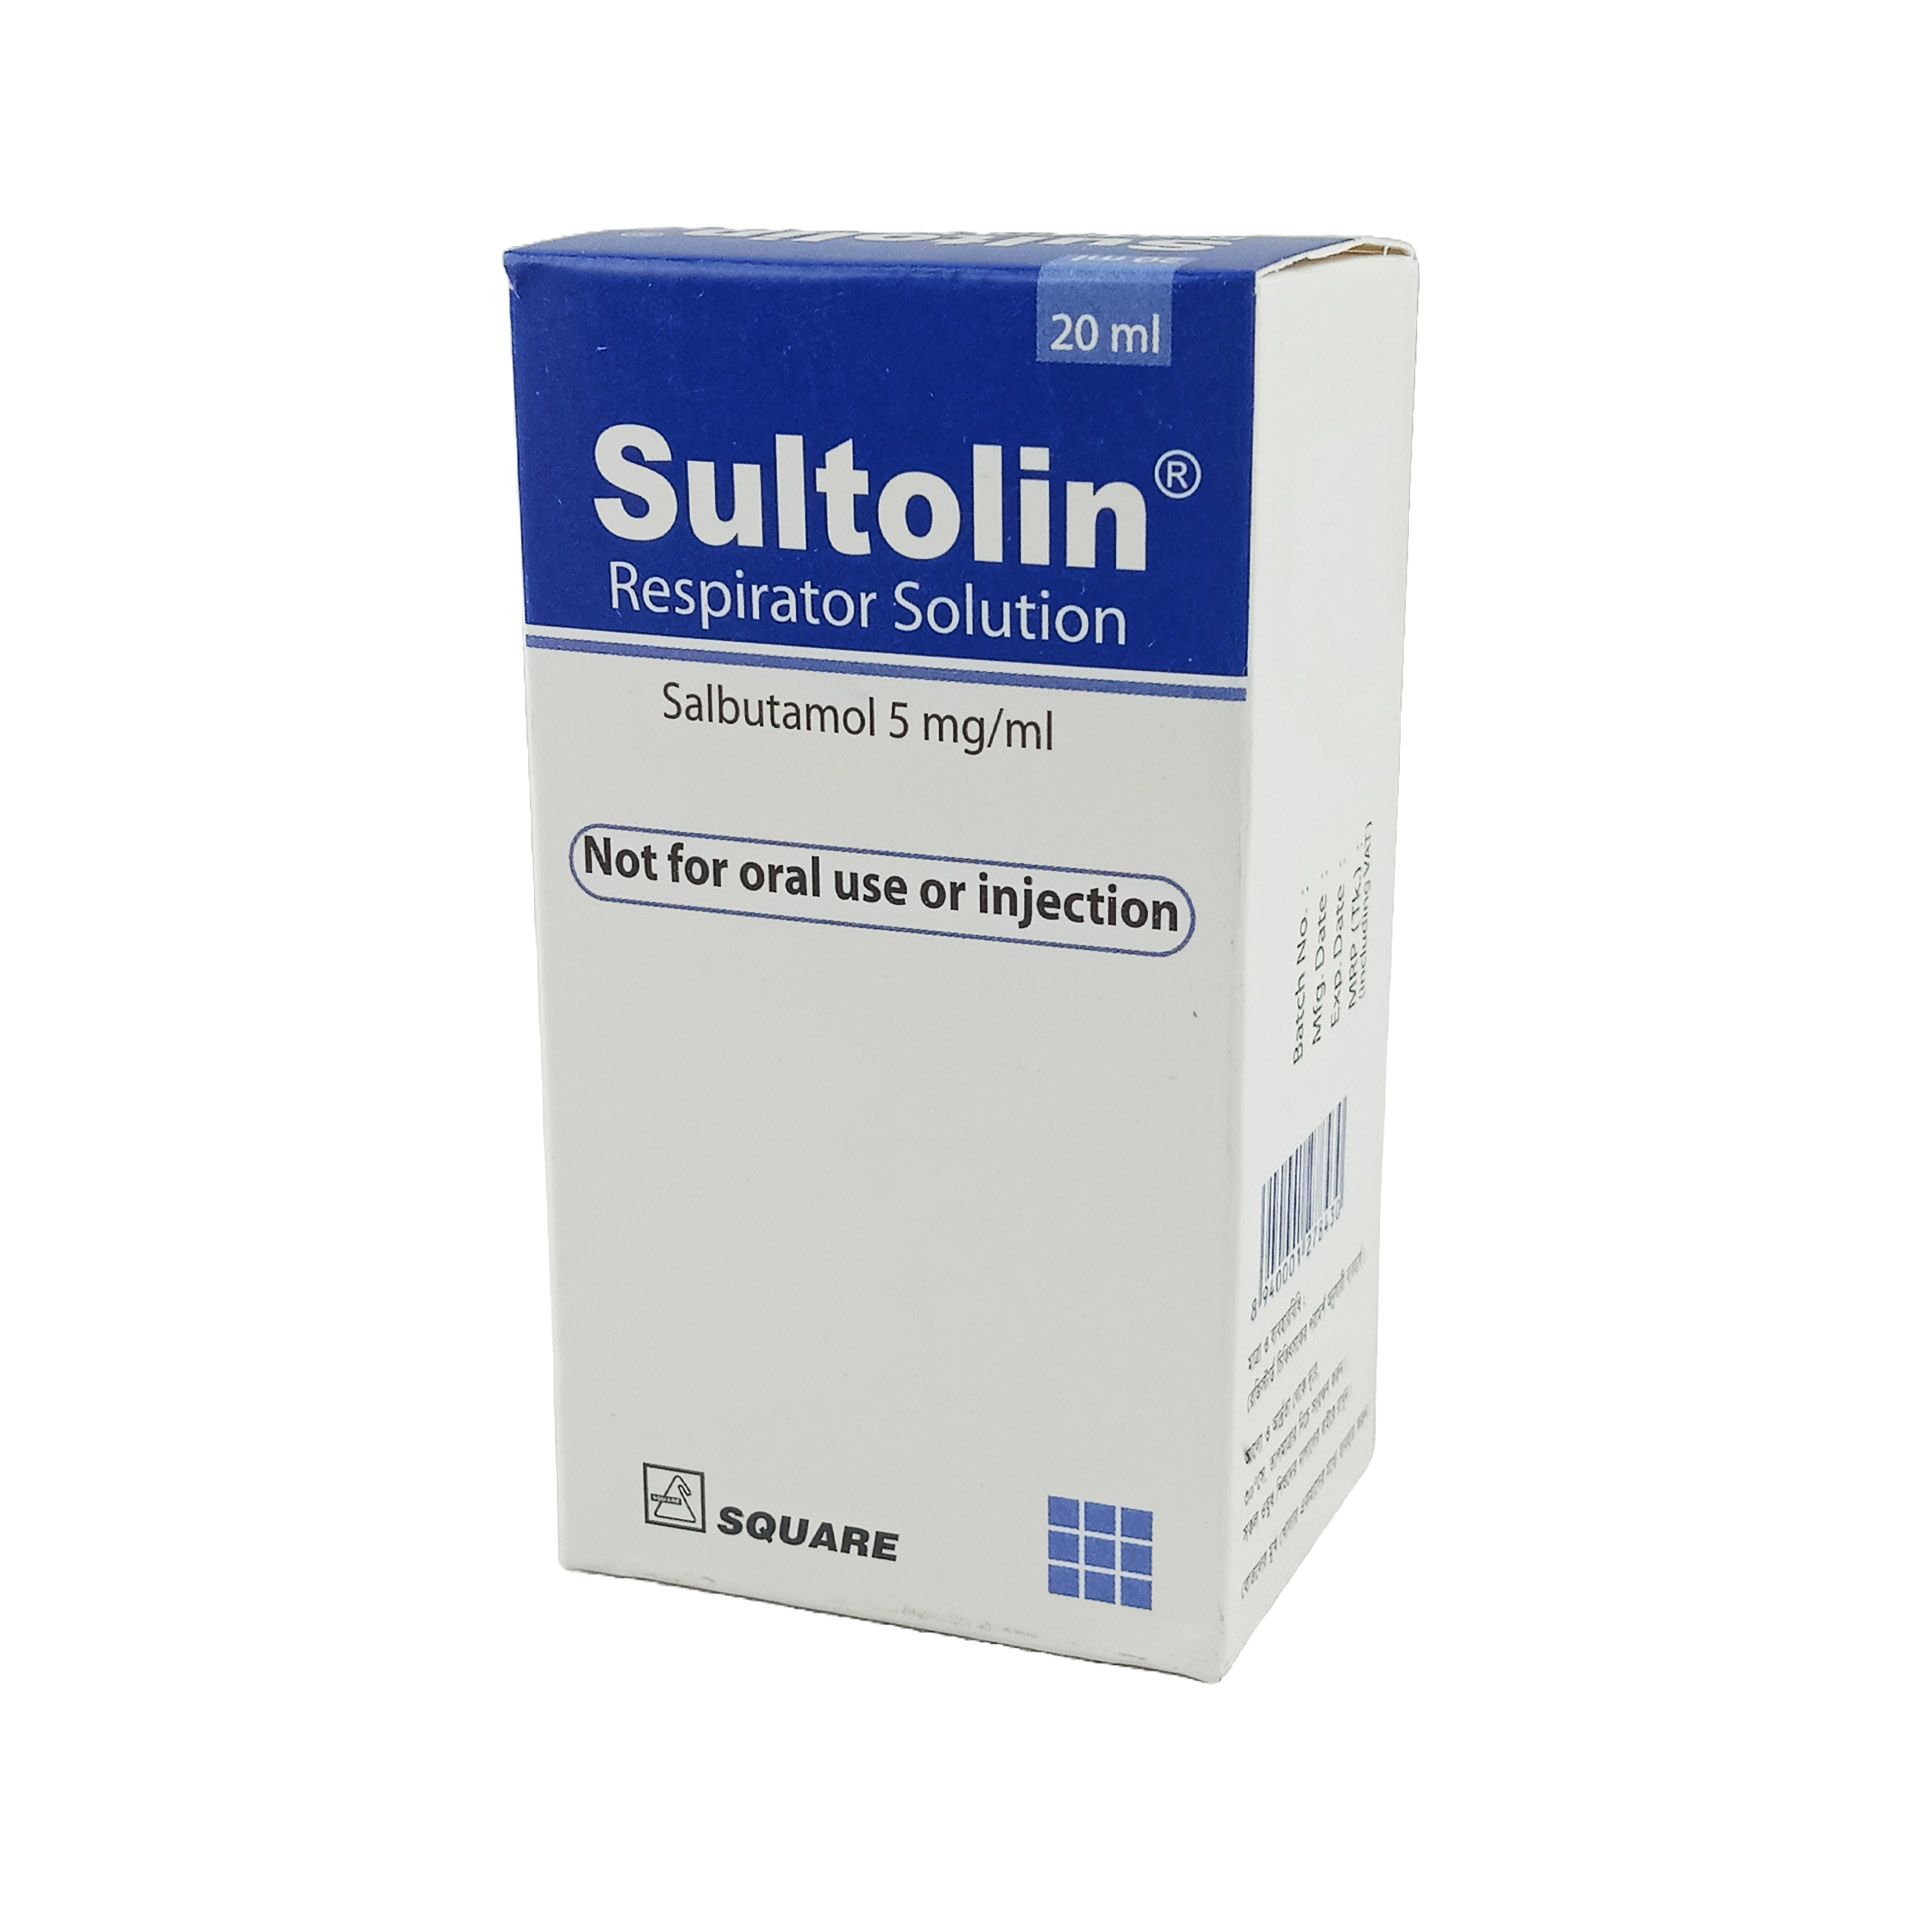 Sultolin Inhaler 100mcg/puff Inhaler